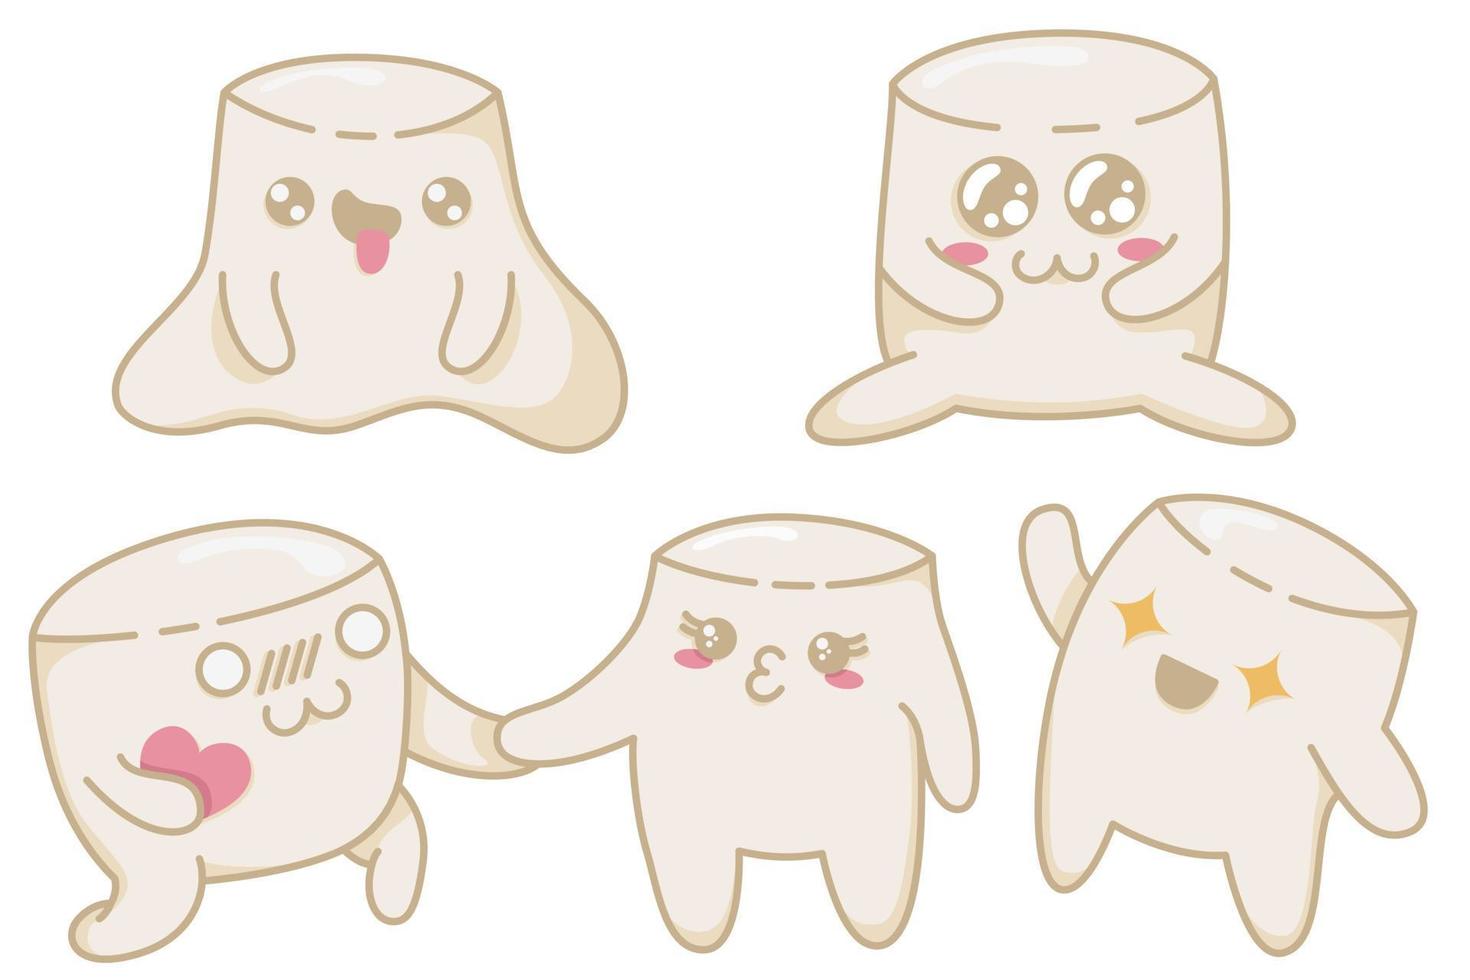 een set schattige kawaii marshmallows met verschillende emoties in anime-stijl. kawaii marshmallow-personages in een vlakke stijl, met de hand getekende ansichtkaarten om hun gevoelens te uiten vector